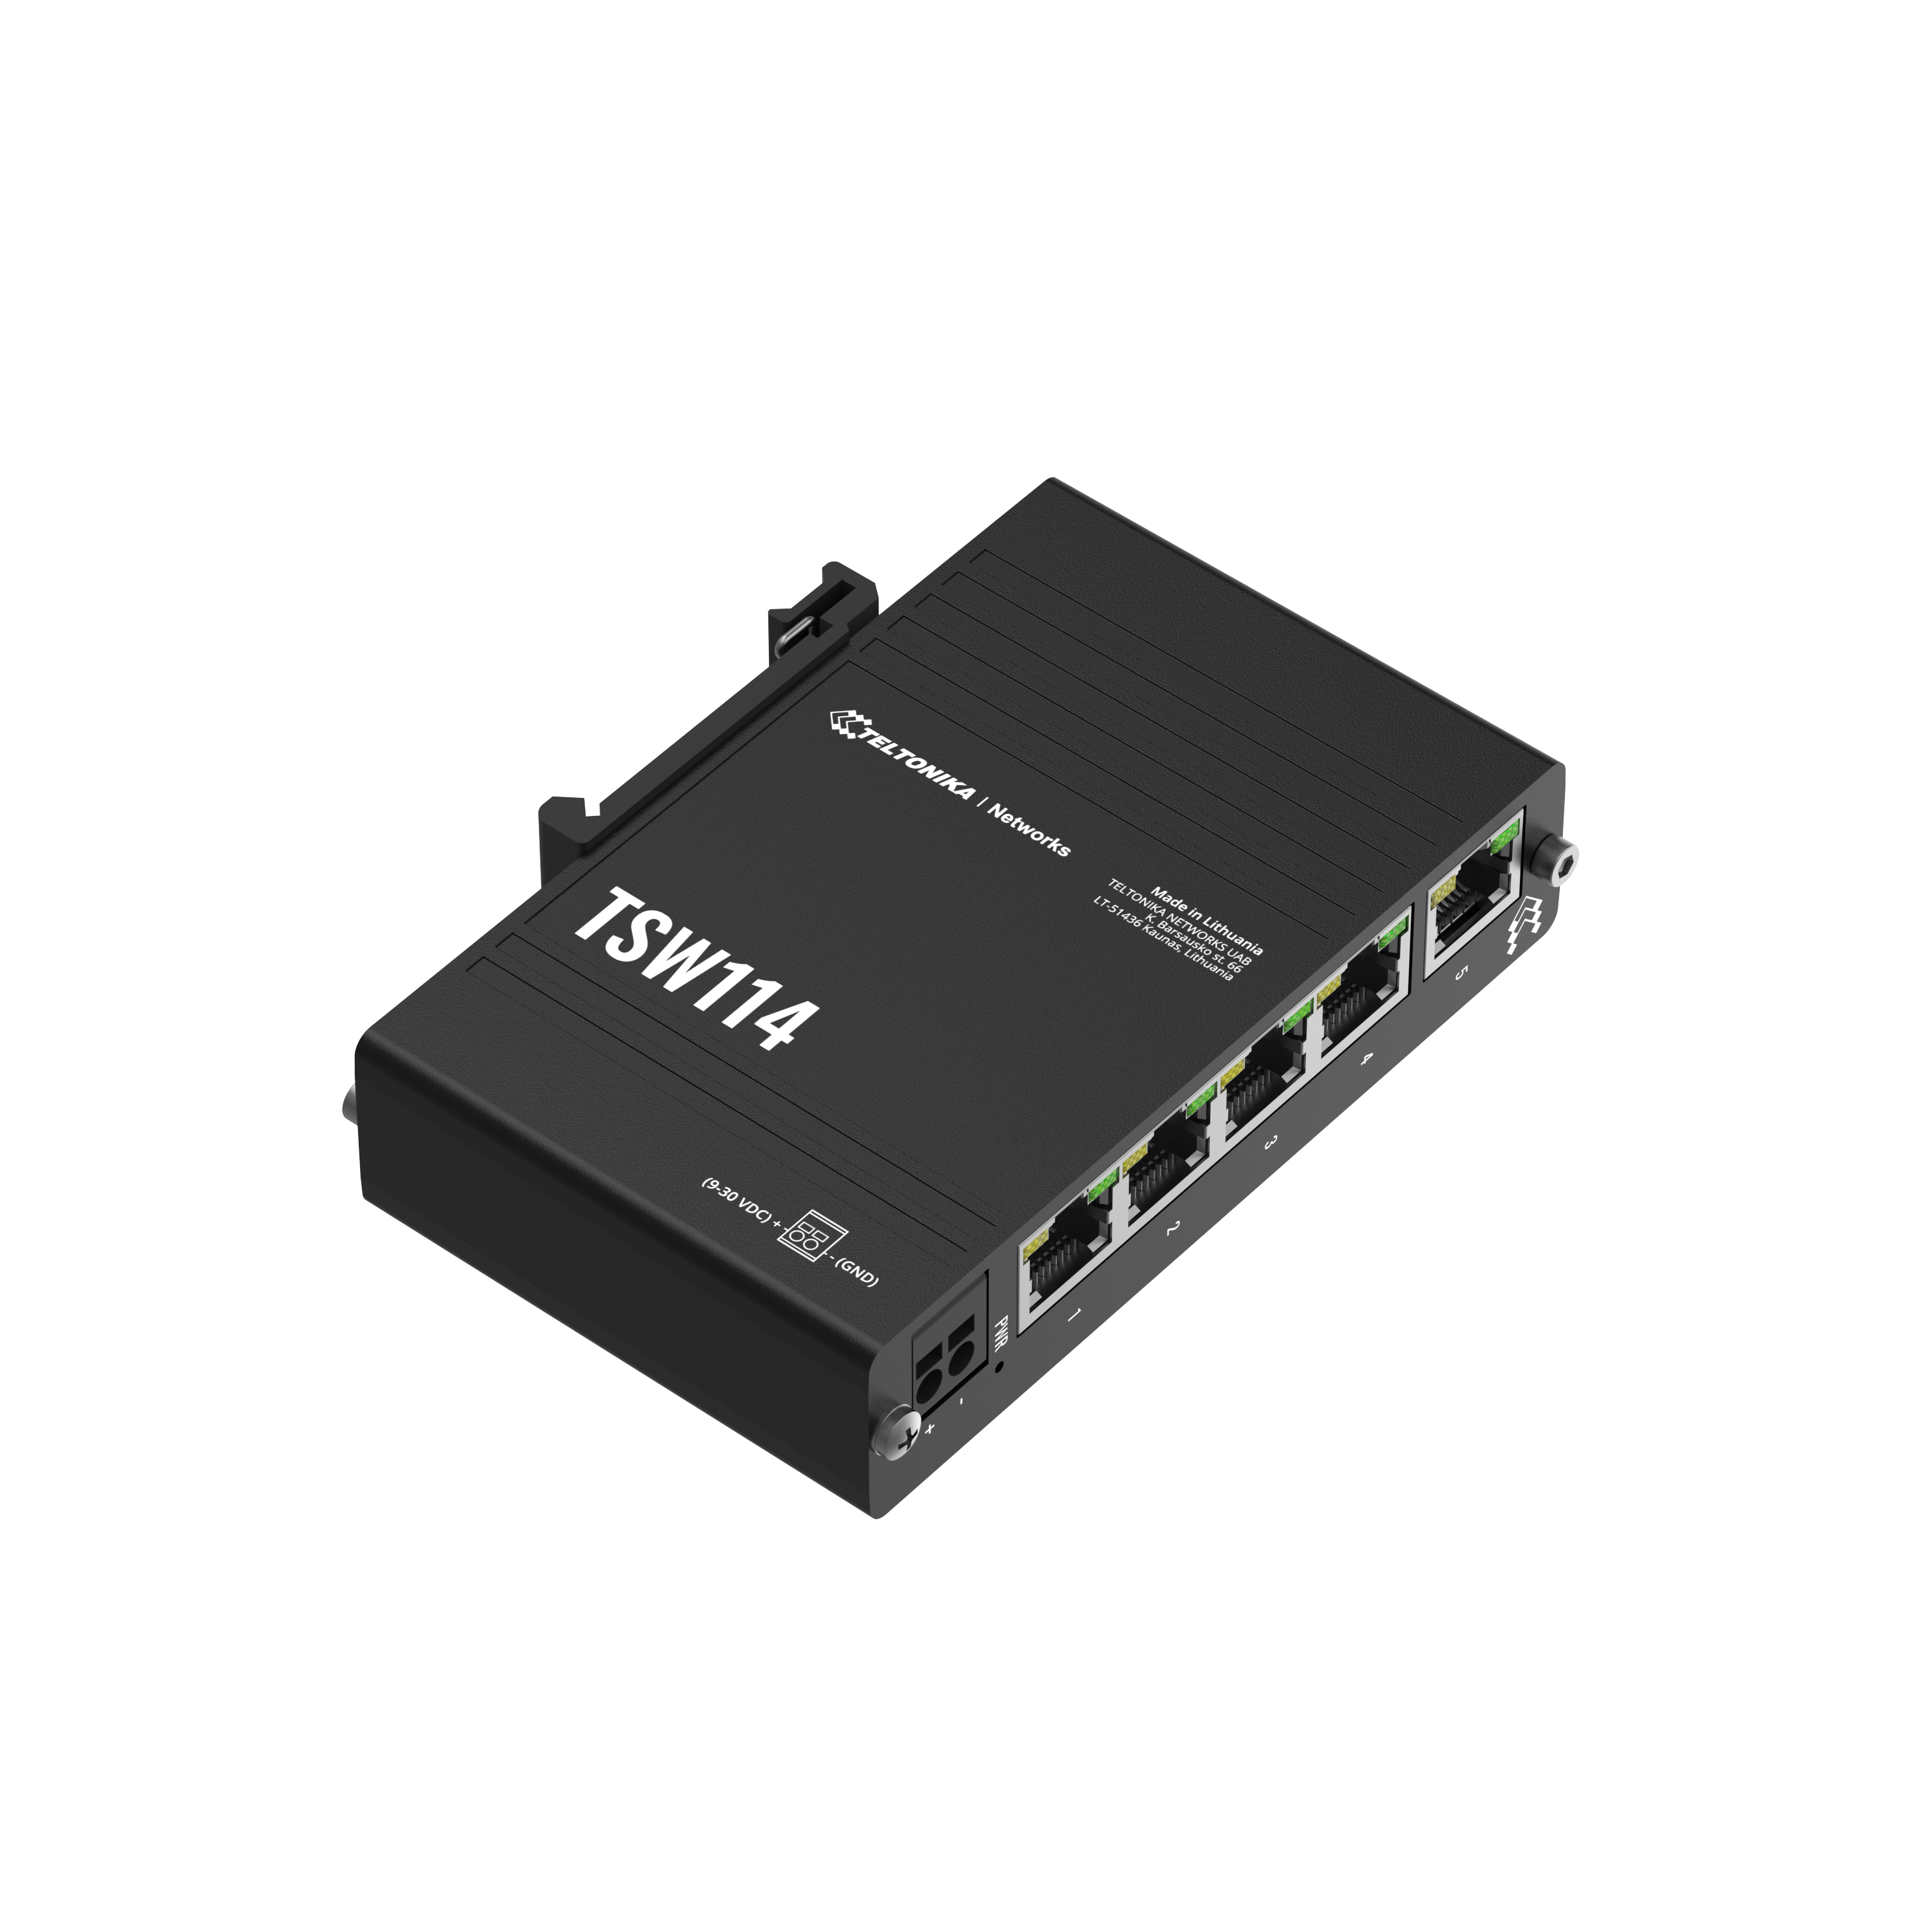 TSW114 - Teltonika Switches. 5 x Gigabit Ethernet ports